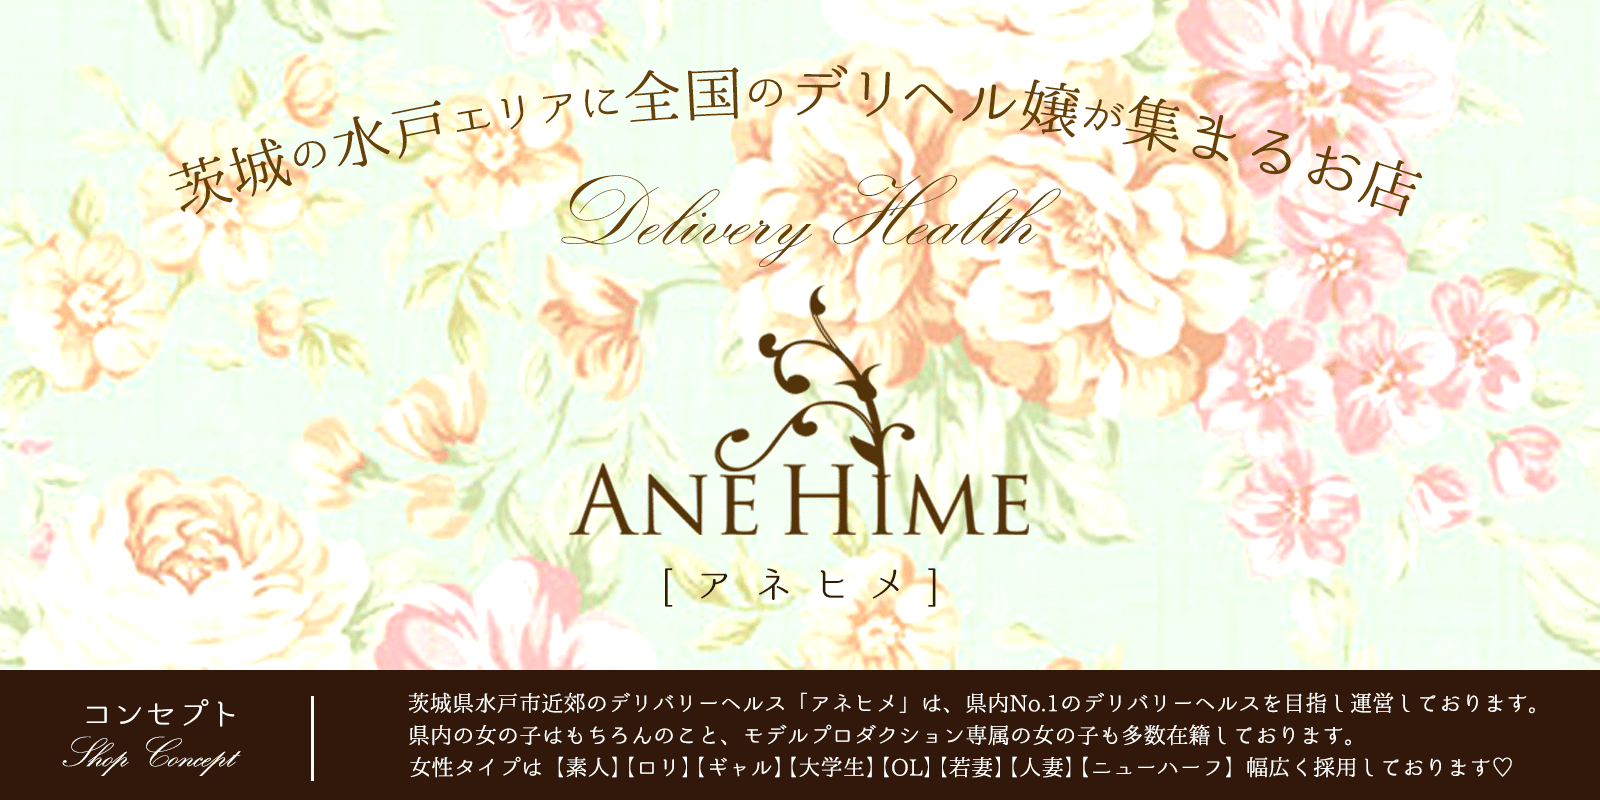 AneHime(アネヒメ)